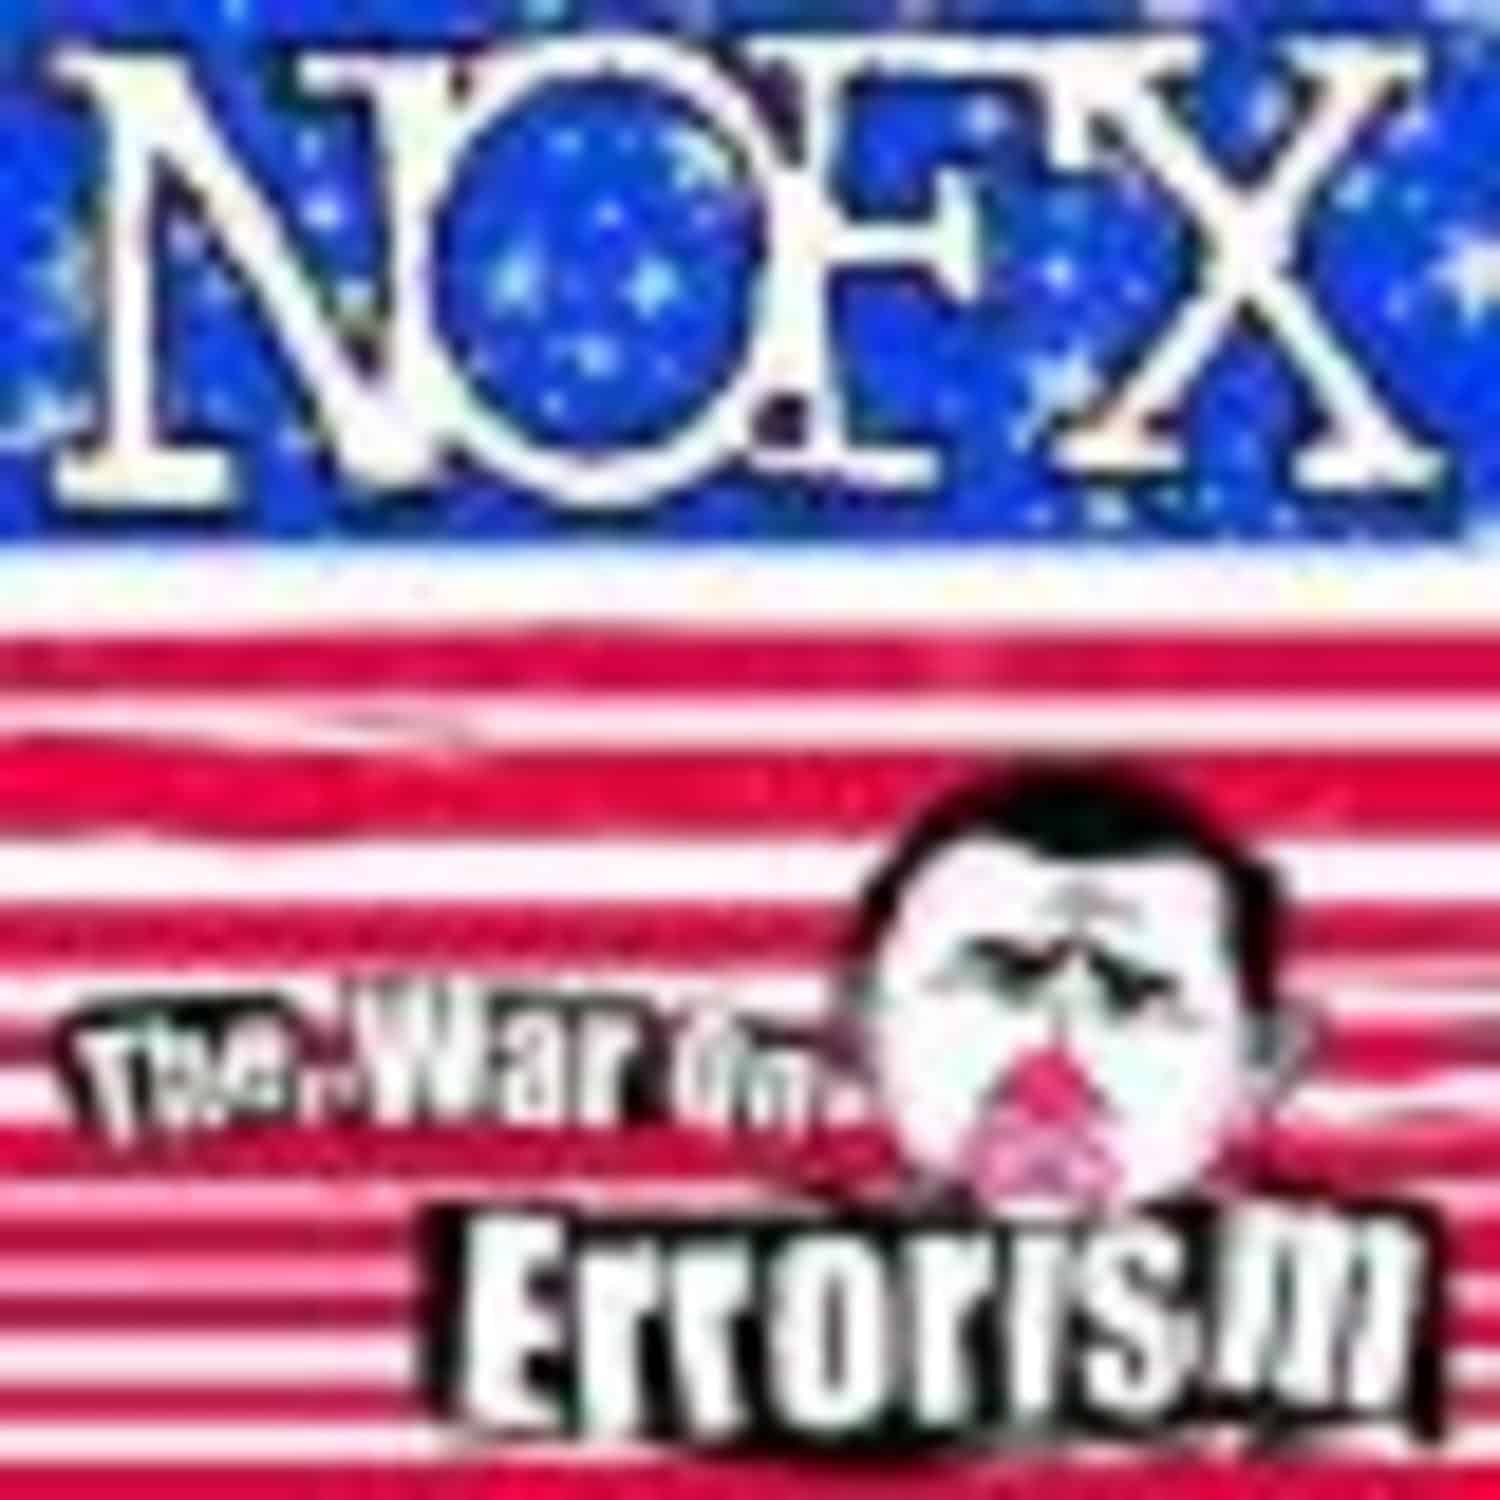 NOFX - THE WAR ON ERRORISM 